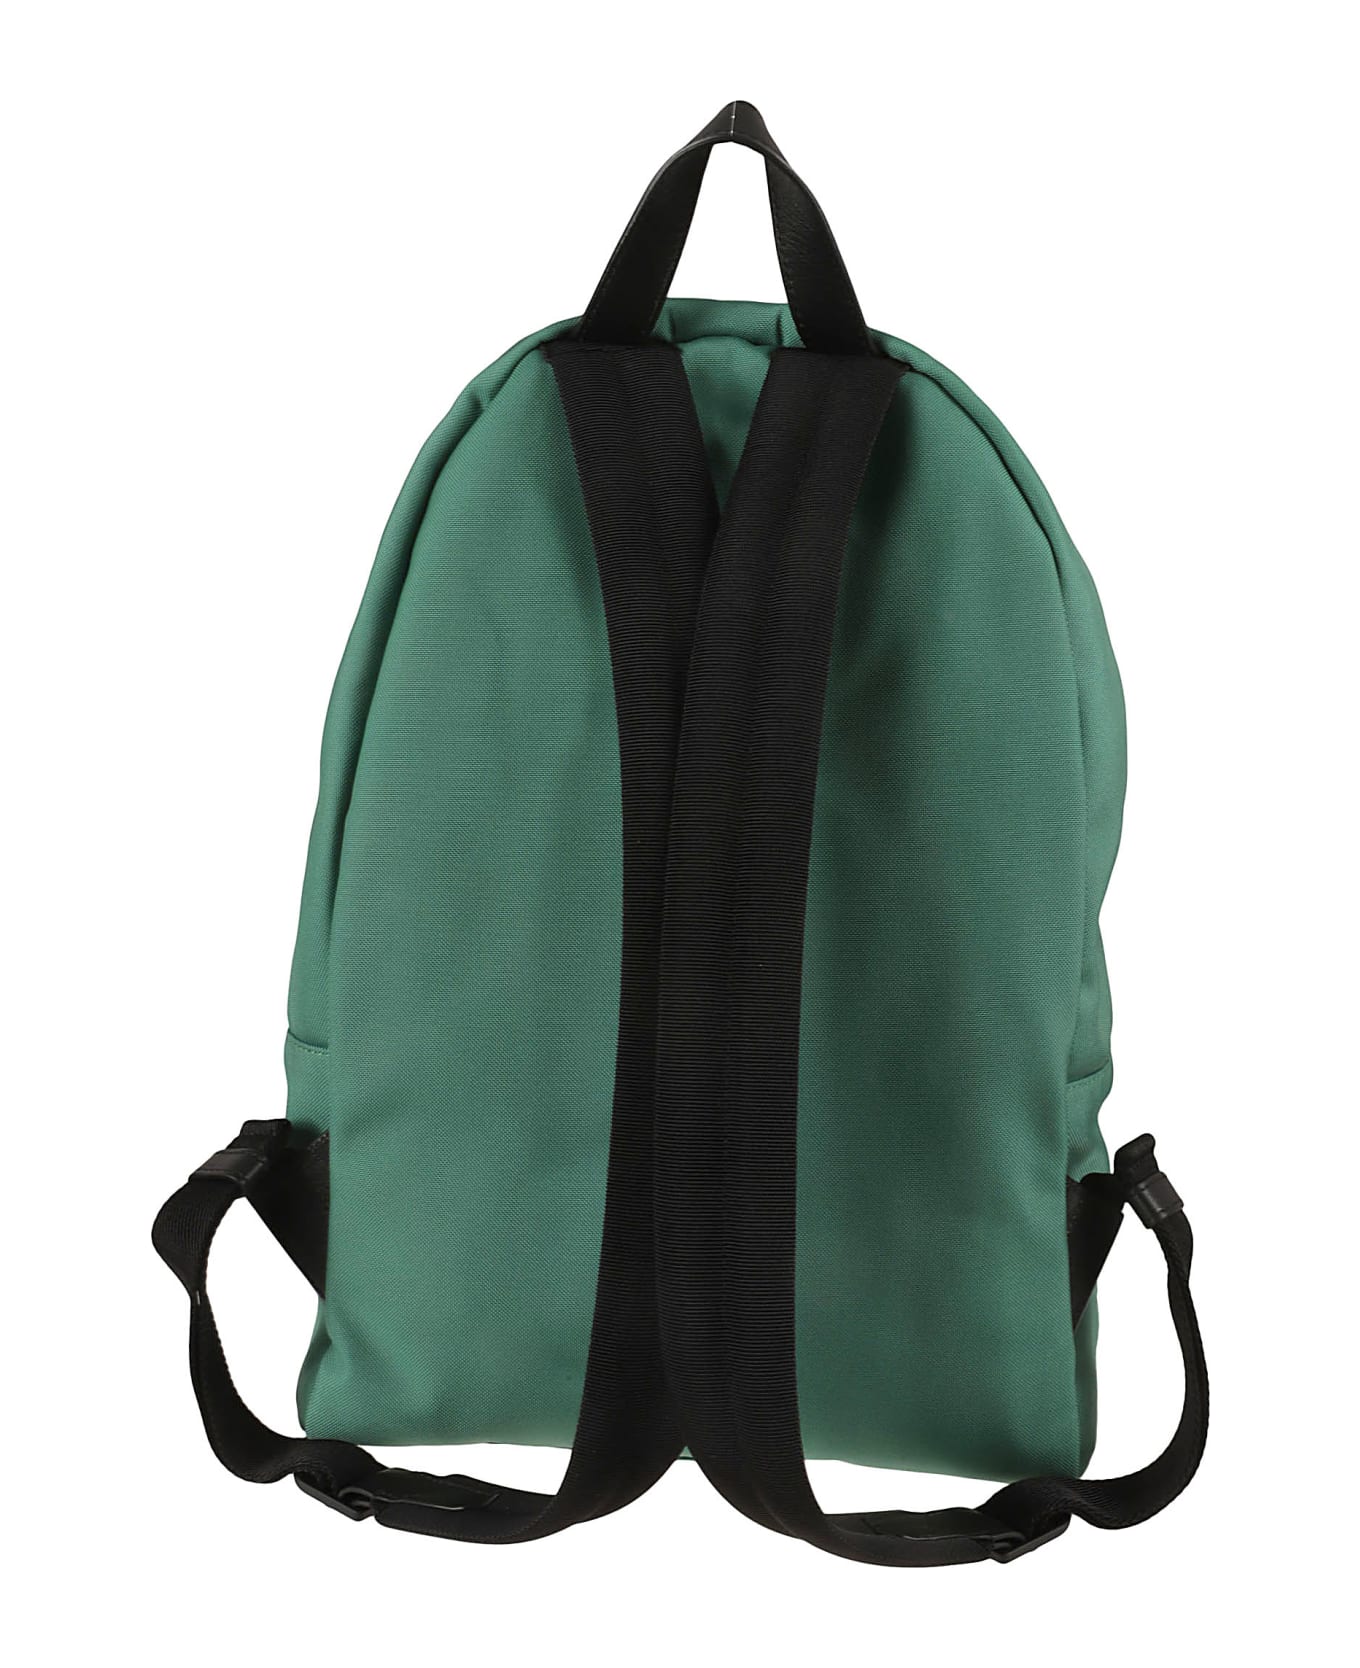 Moncler Pierrick Backpack - Medium Green